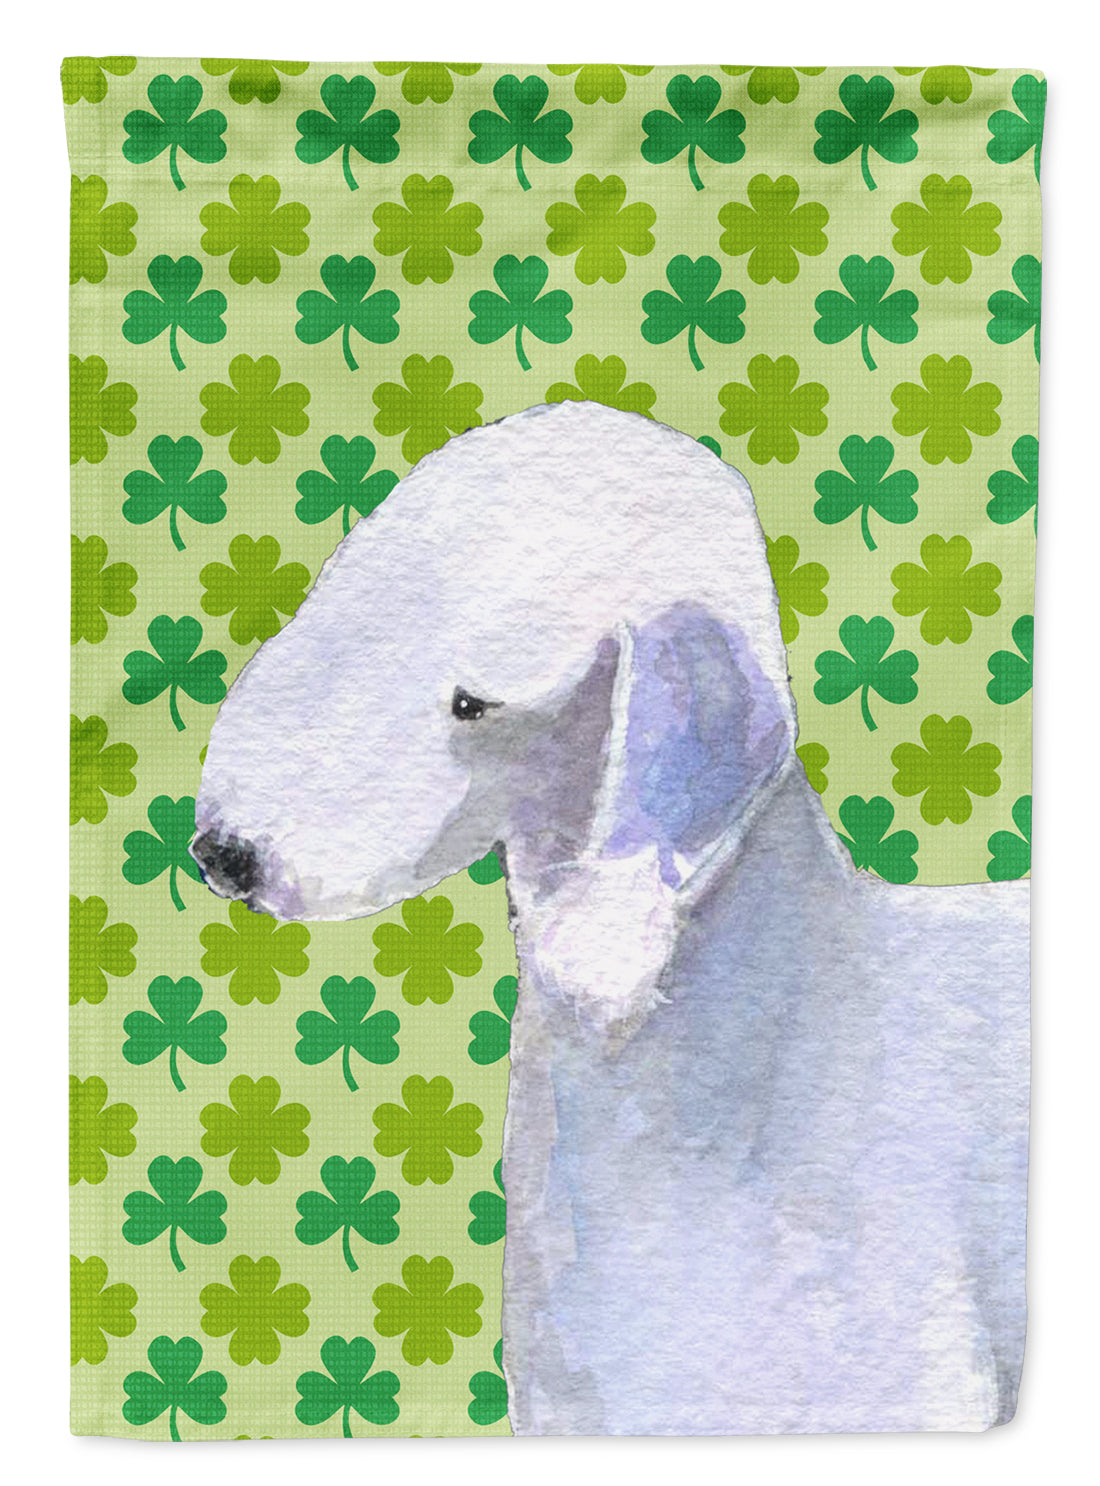 Bedlington Terrier St. Patrick's Day Shamrock Portrait Flag Garden Size.